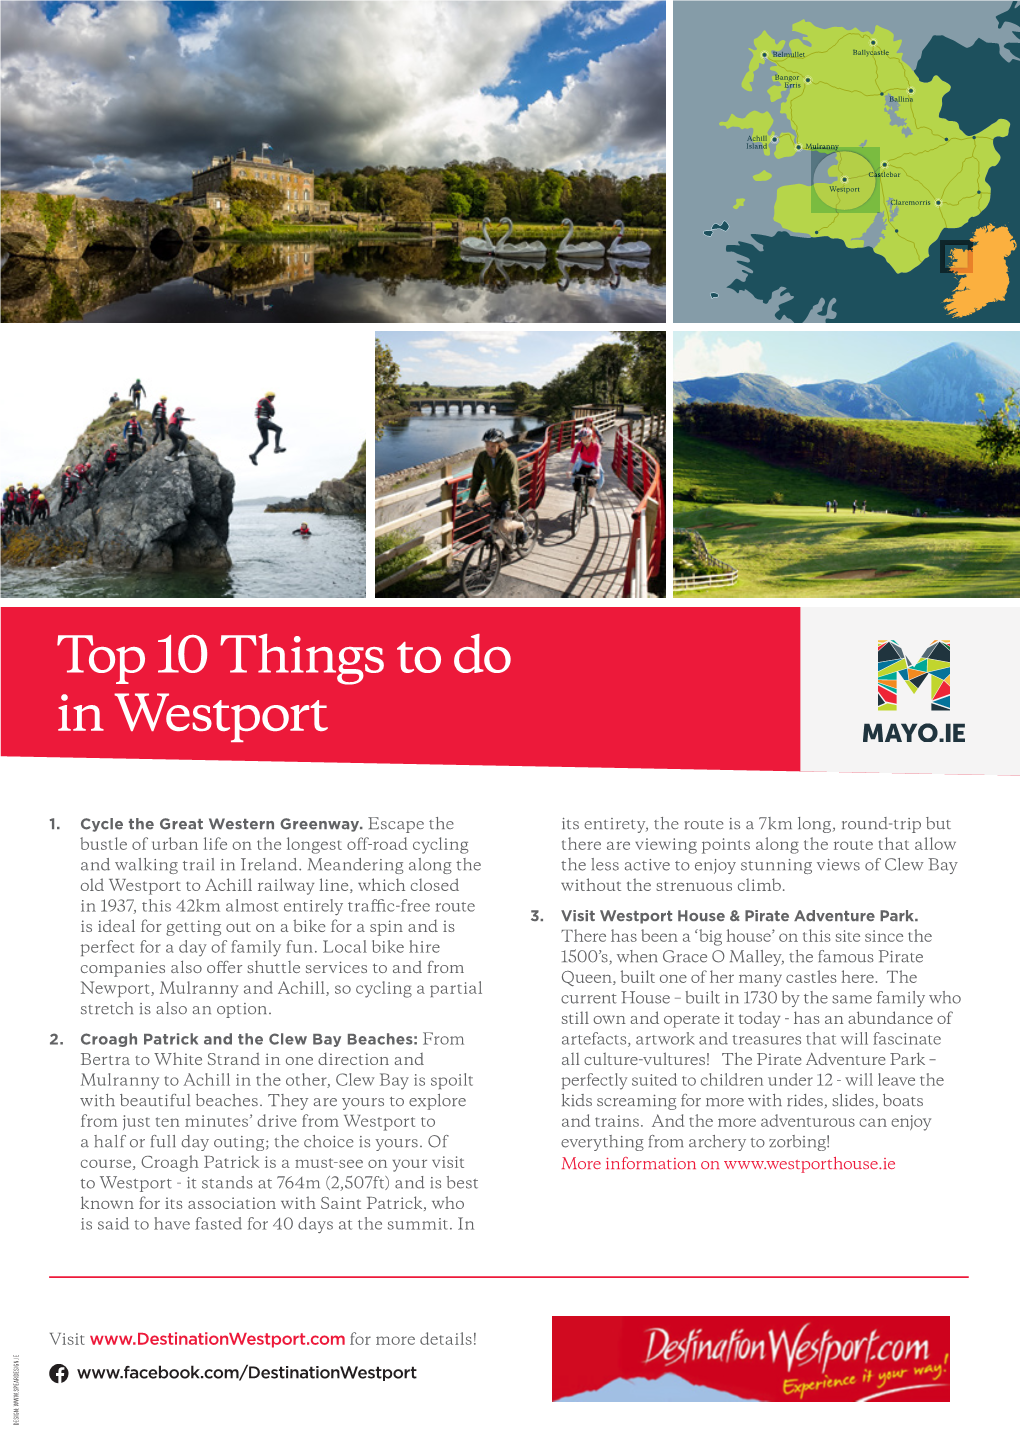 Top 10 Things to Do in Westport